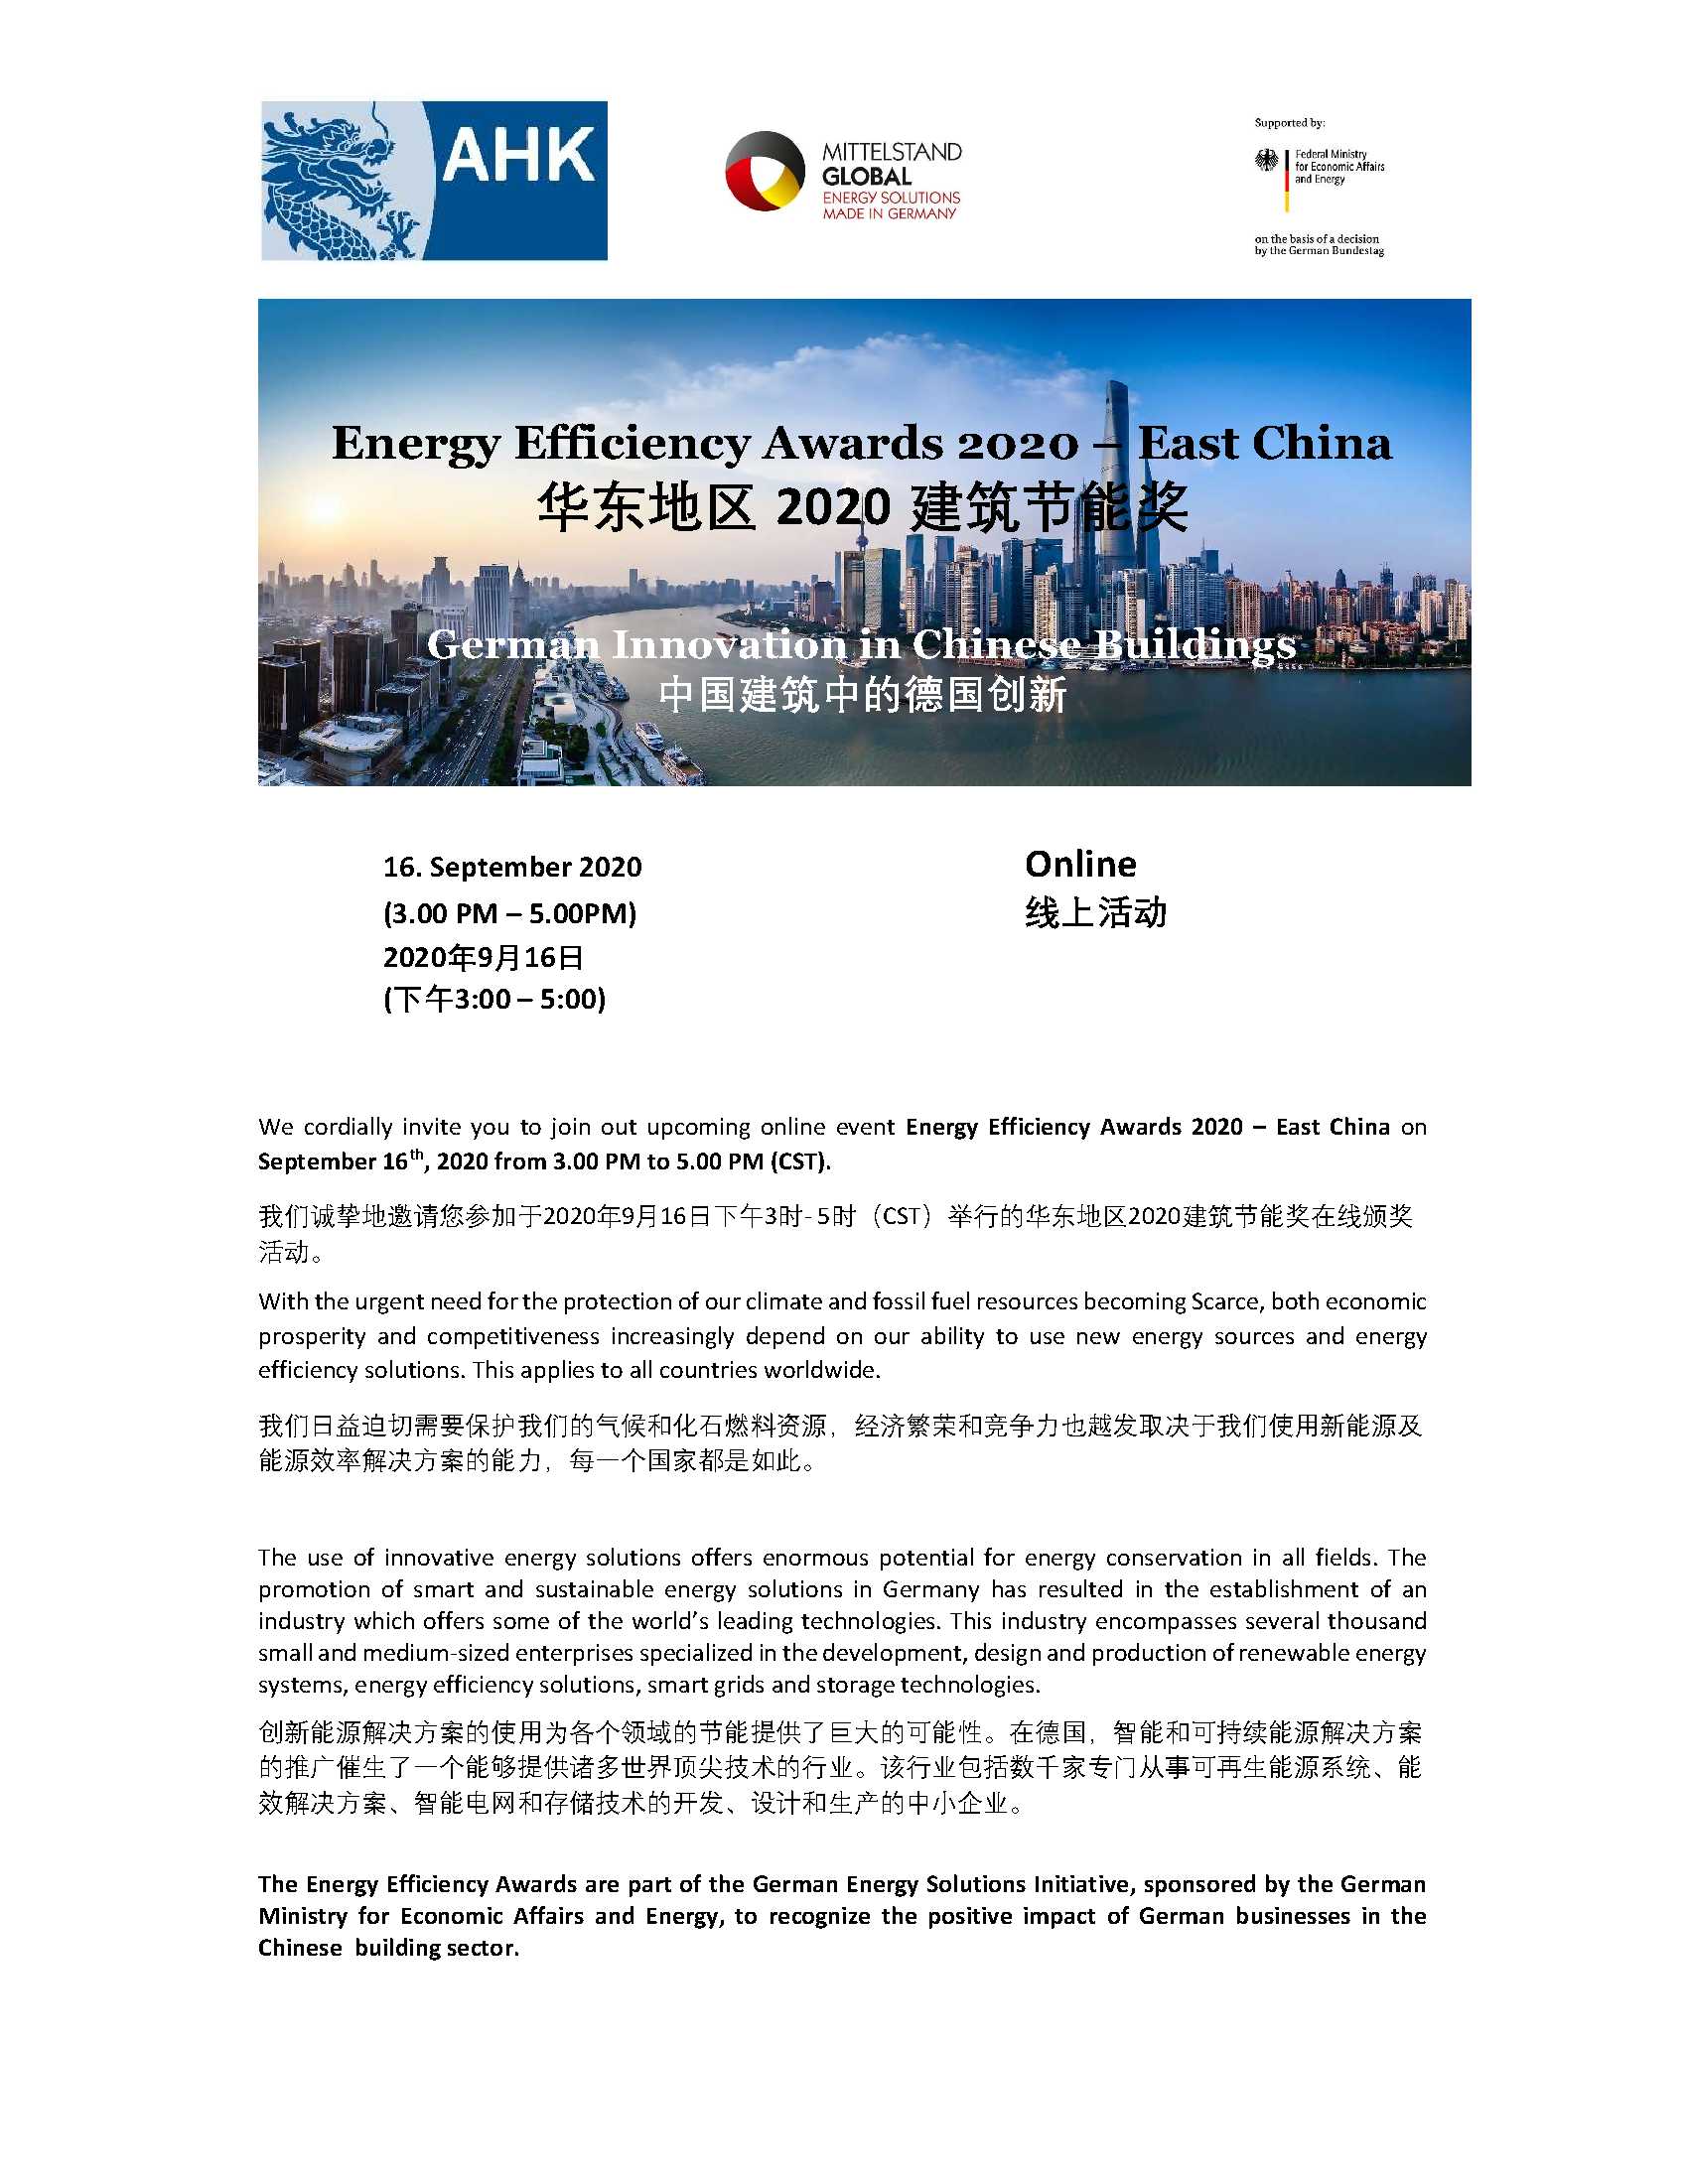 Einladung zum Fachsymposium der Leistungsschau 2020 in Ostchina